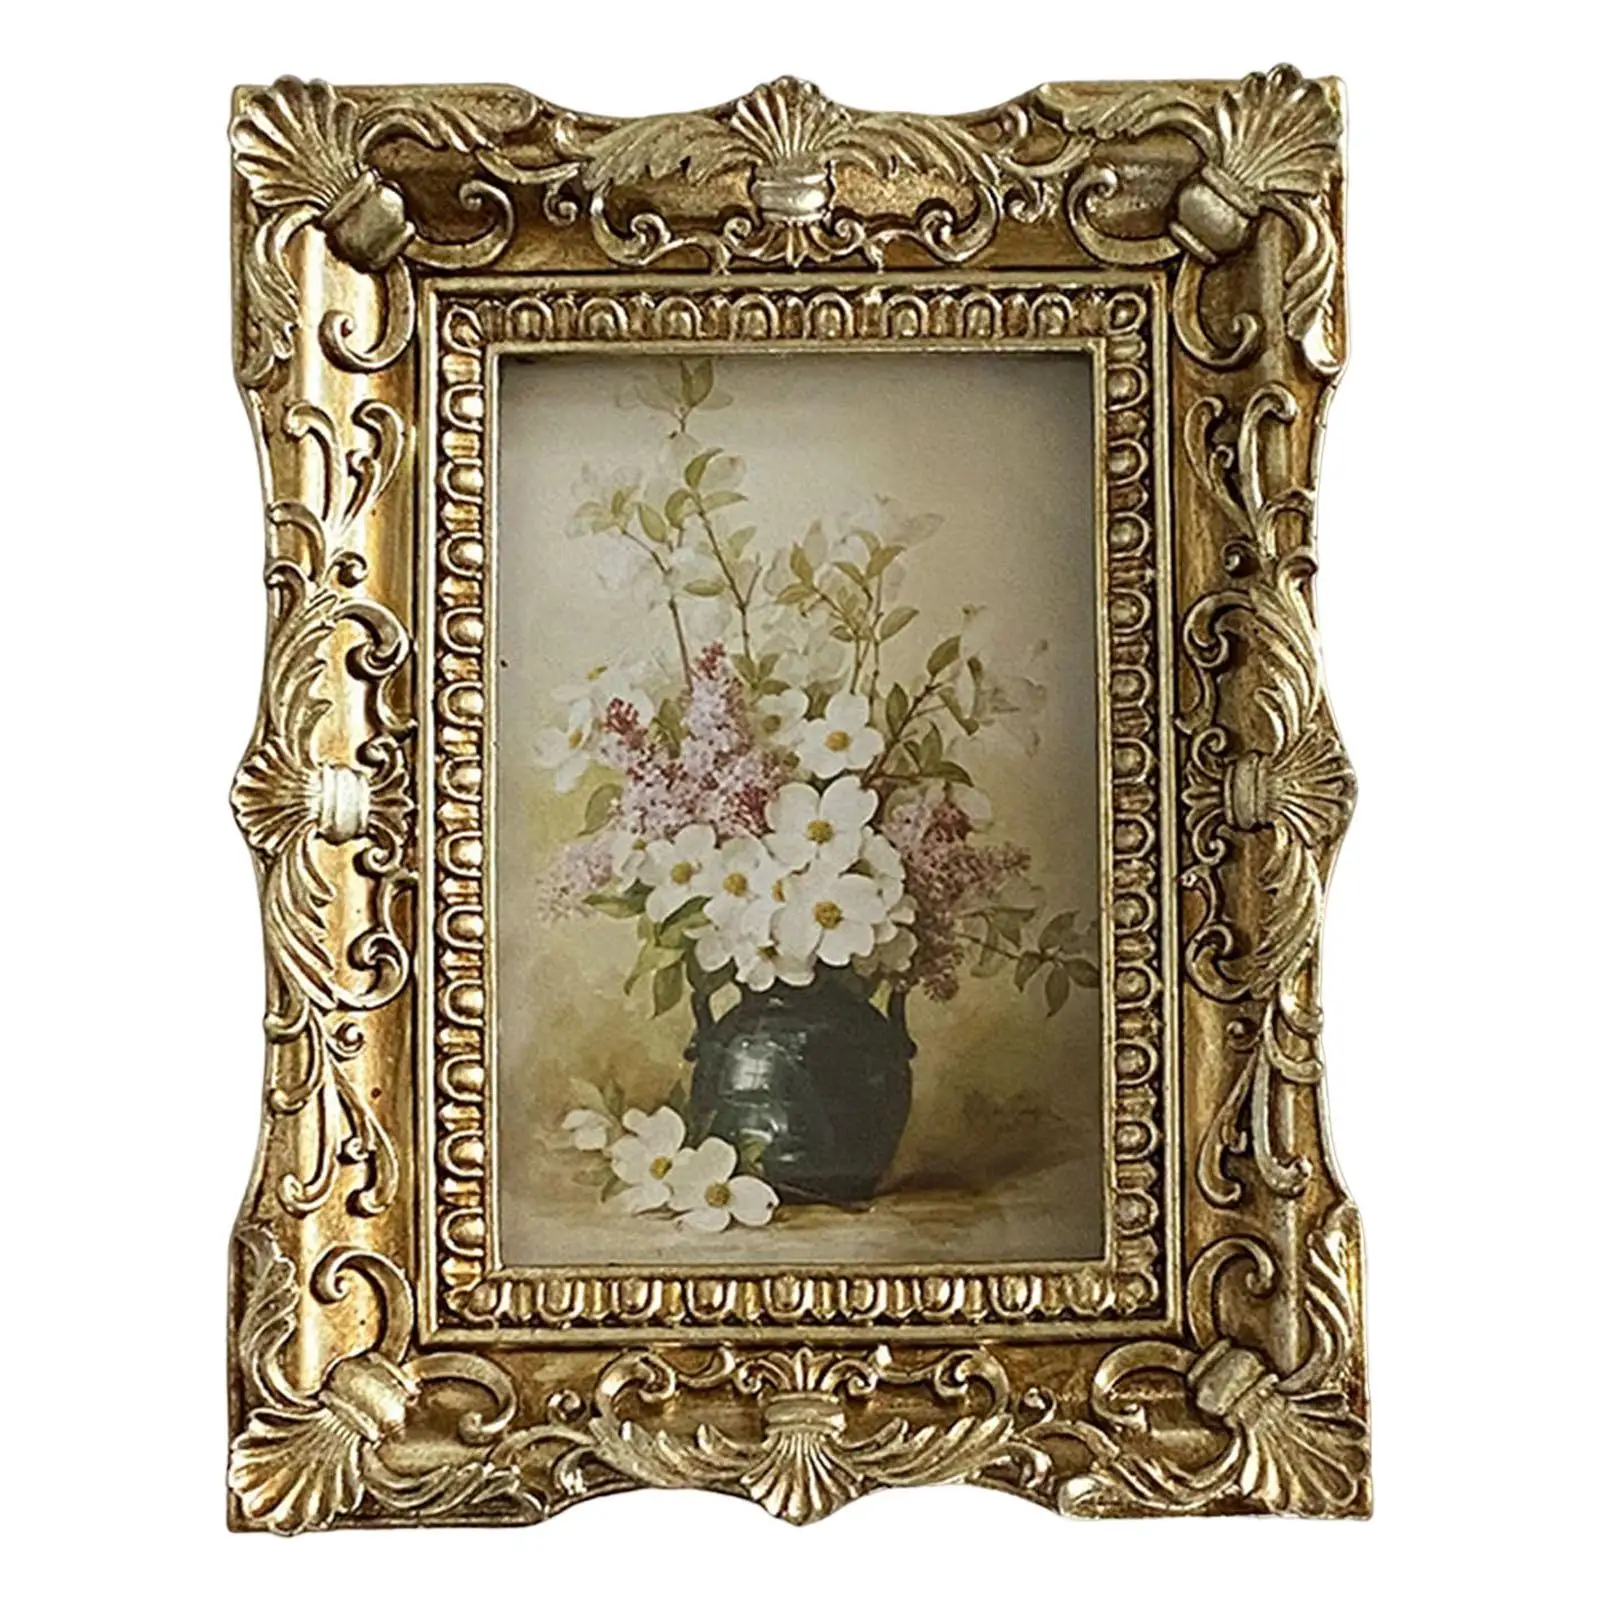 Vintage Style Photo Frame Picture Holder Desktop Picture Frame Ornate Tabletop Hanging for Home Wedding Bedroom Decor Gift